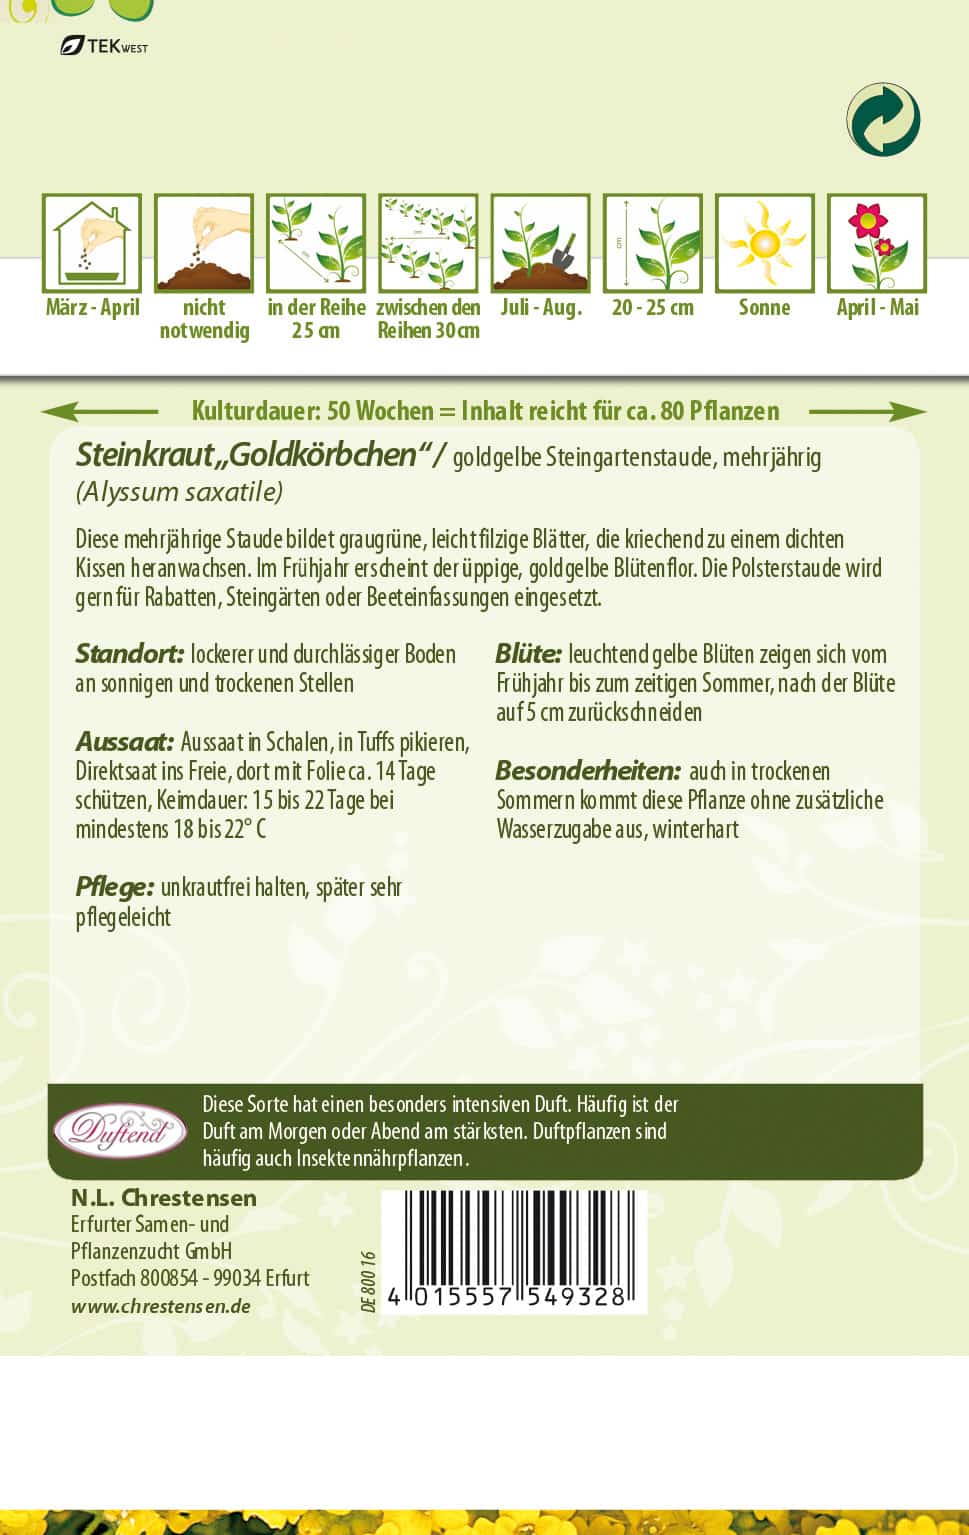 Alyssum saxatile Steinkraut, Goldköpchen